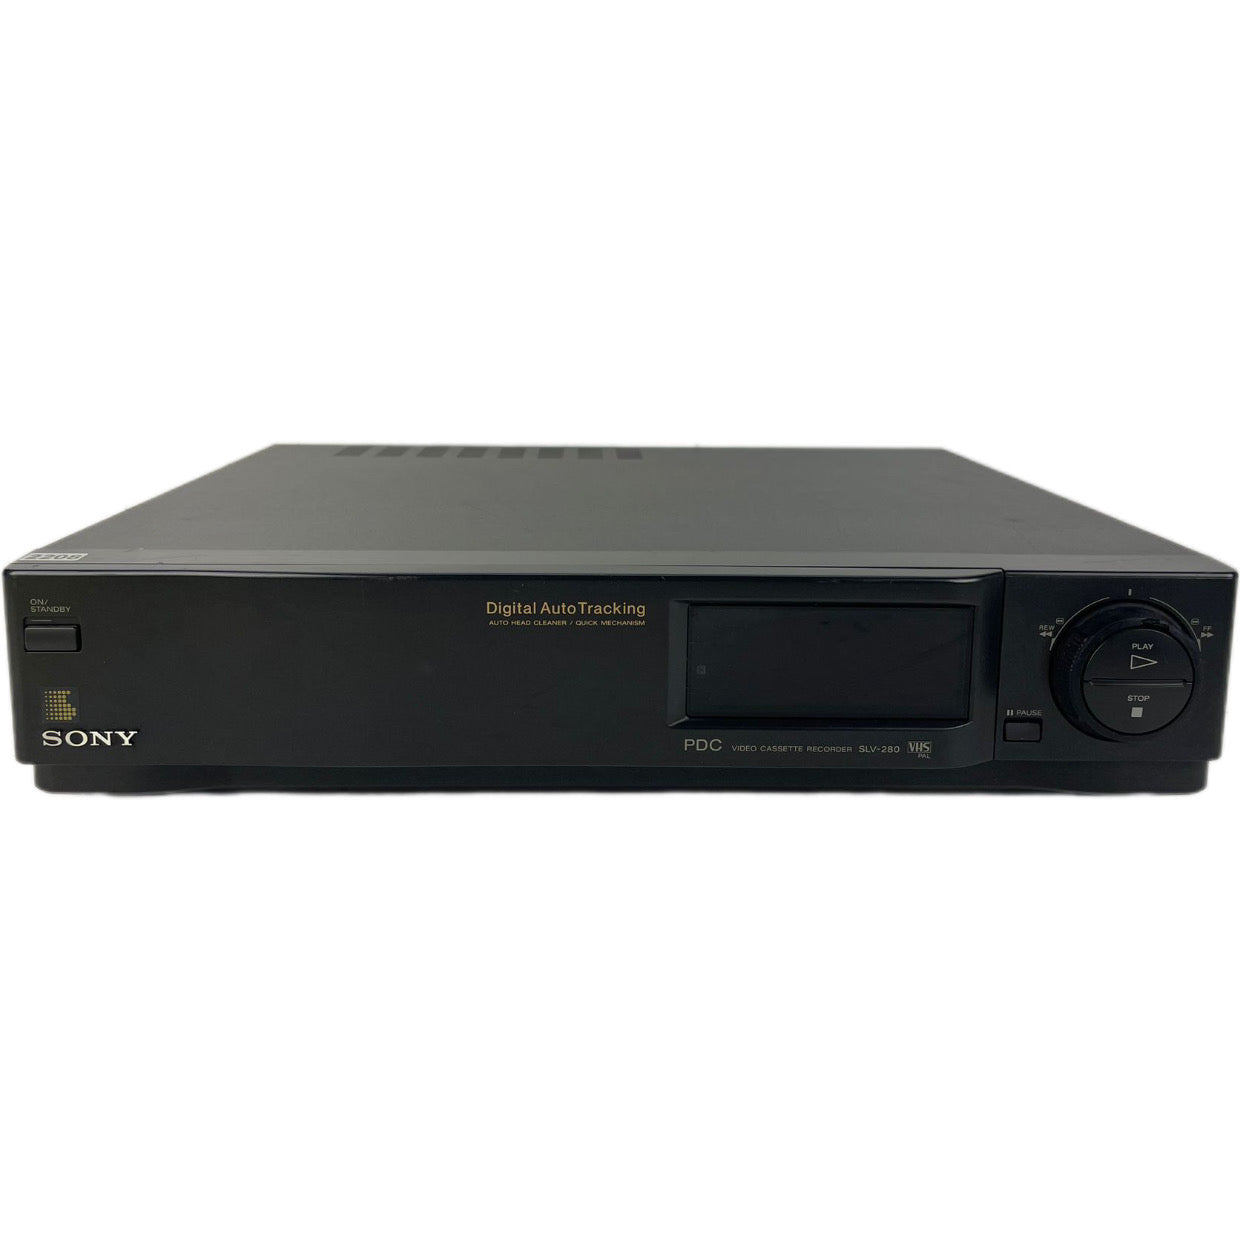 Sony SLV-280 PDC Video Cassette Recorder | VHS Video Speler